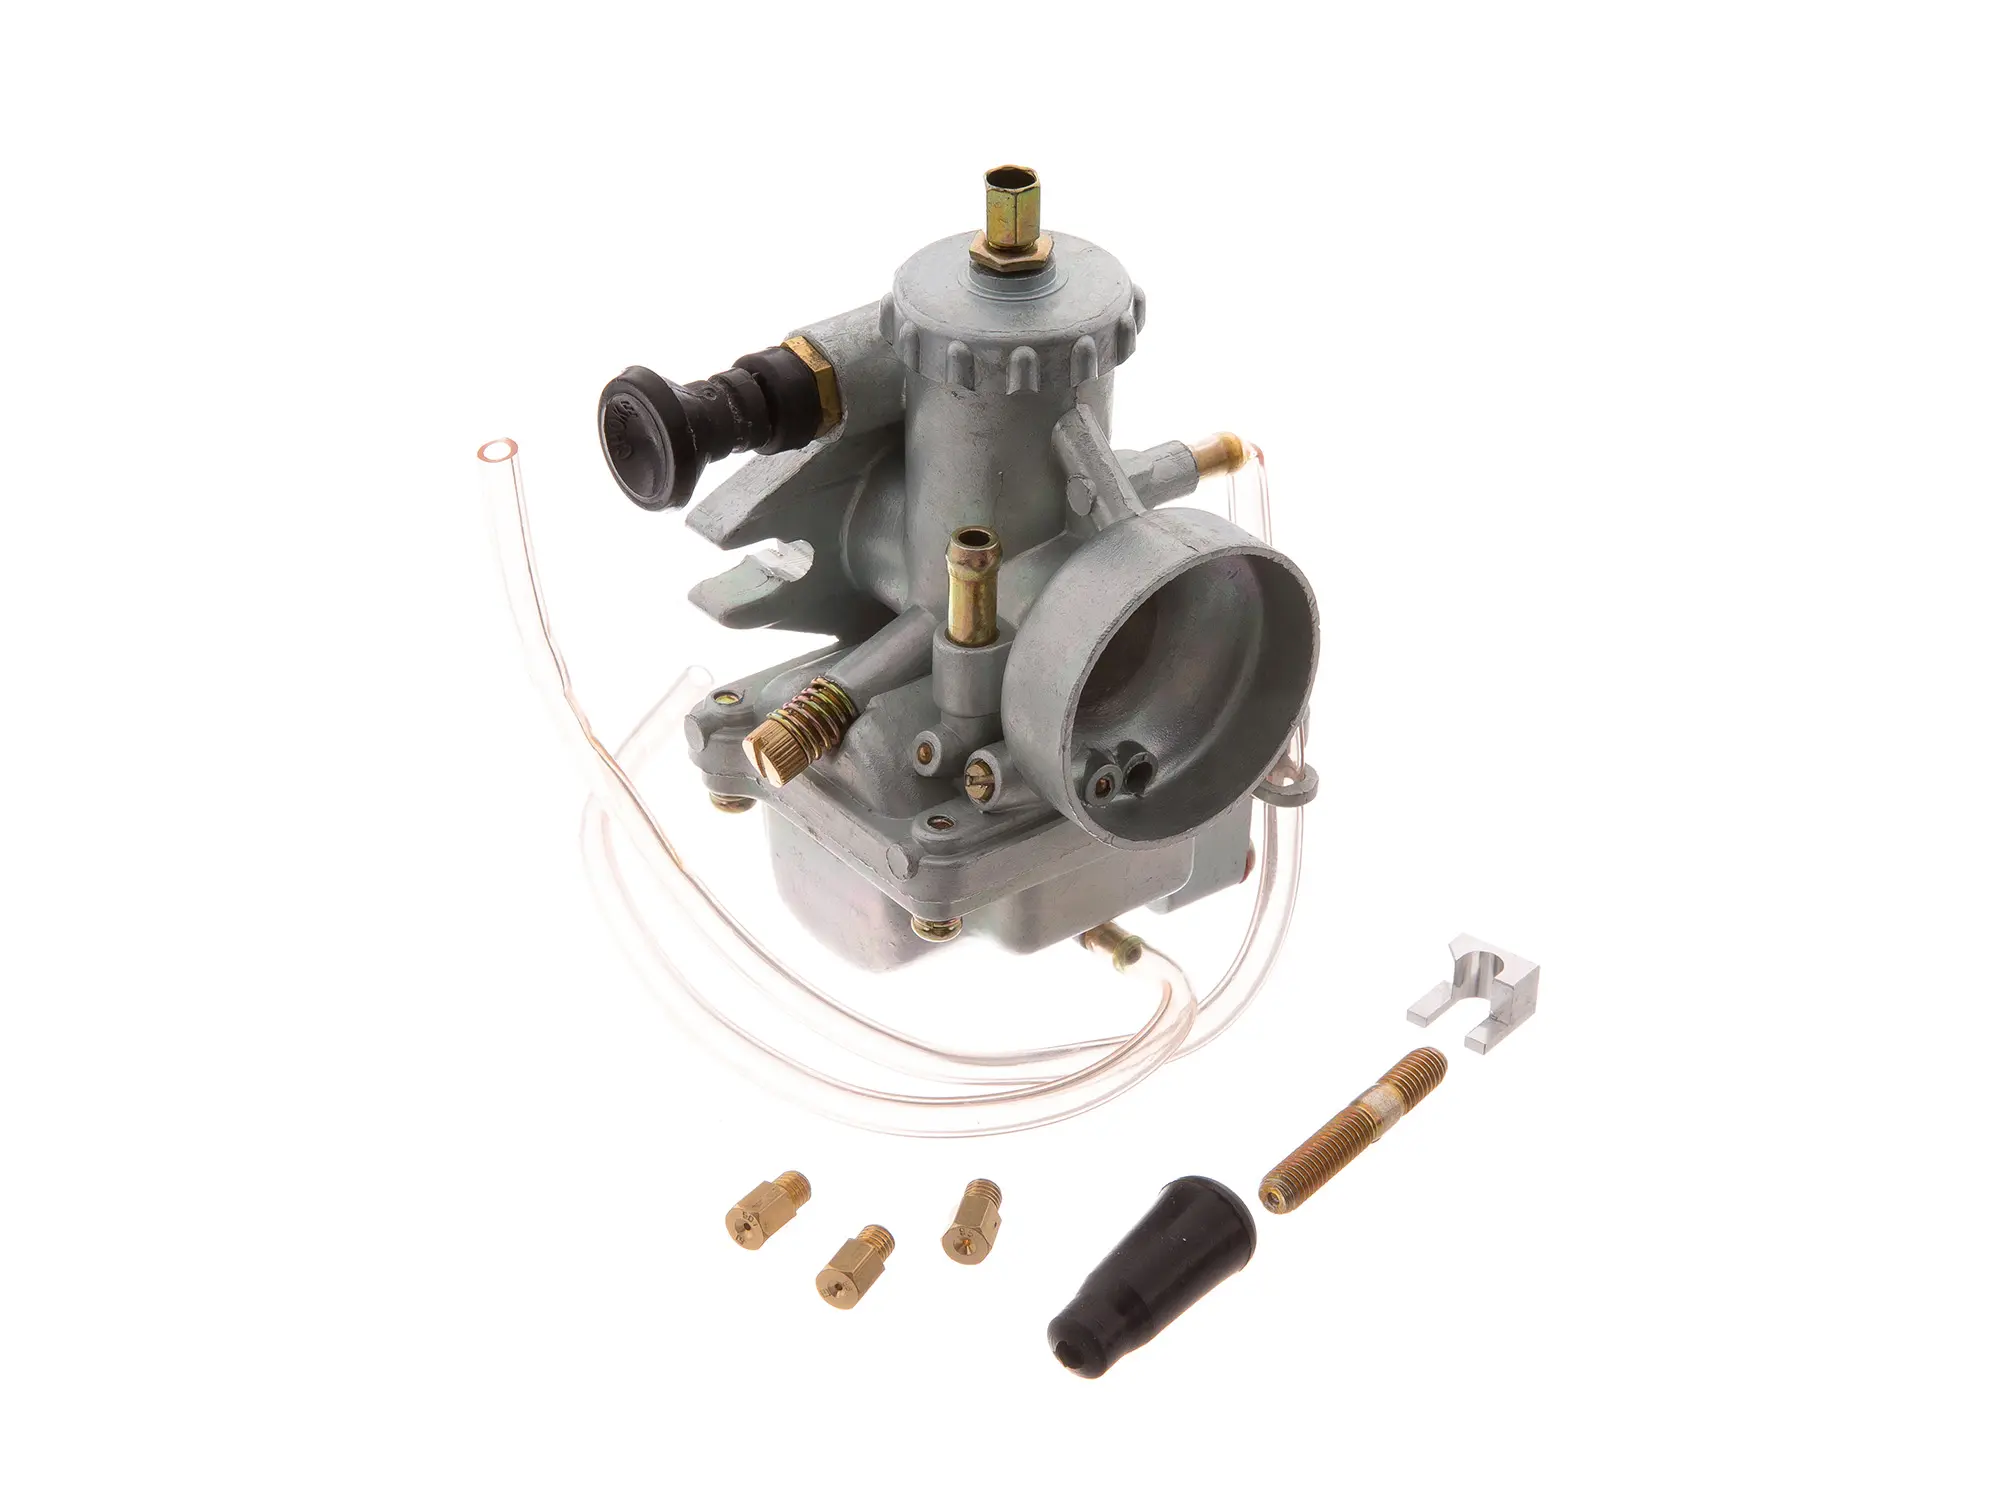 Gebraucht - ZT Rennvergaser VM-20, Art.-Nr.: 99002229 - Bild 1